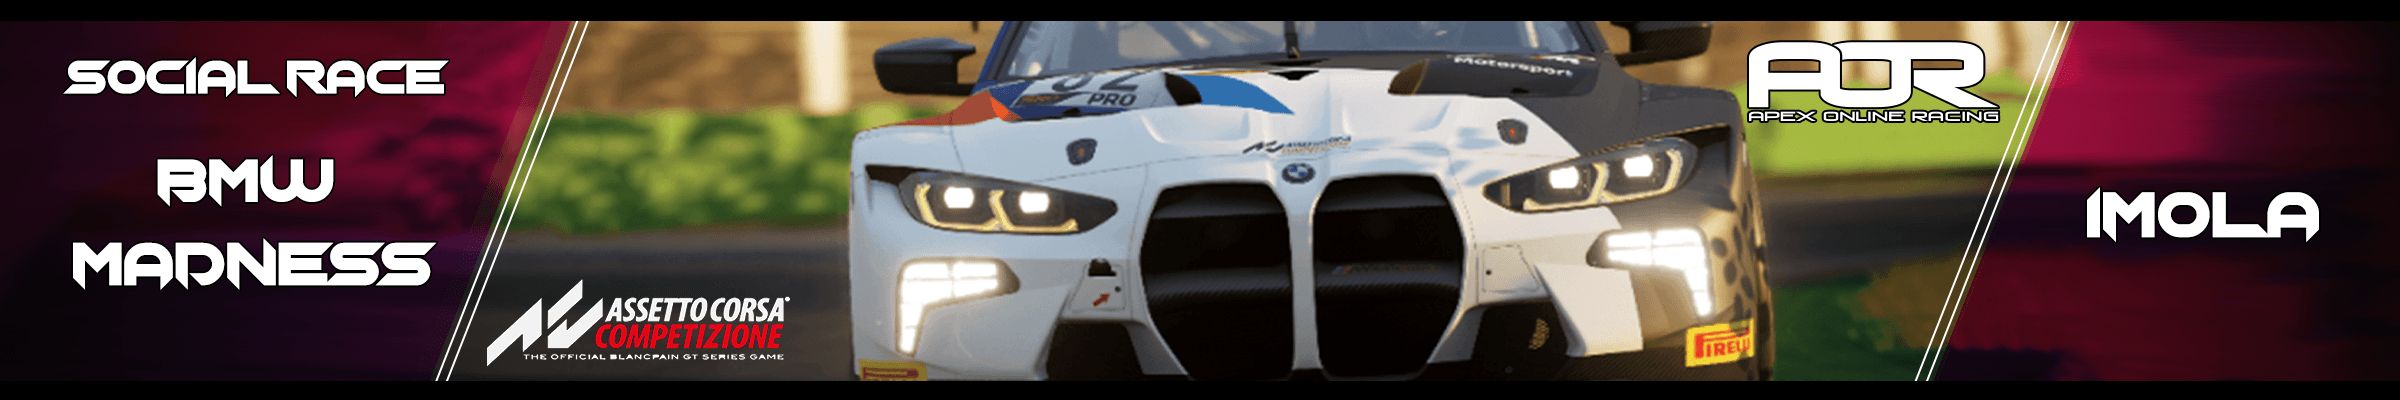 PC Assetto Corsa Competizione Event Social Race - M4 Madness Imola